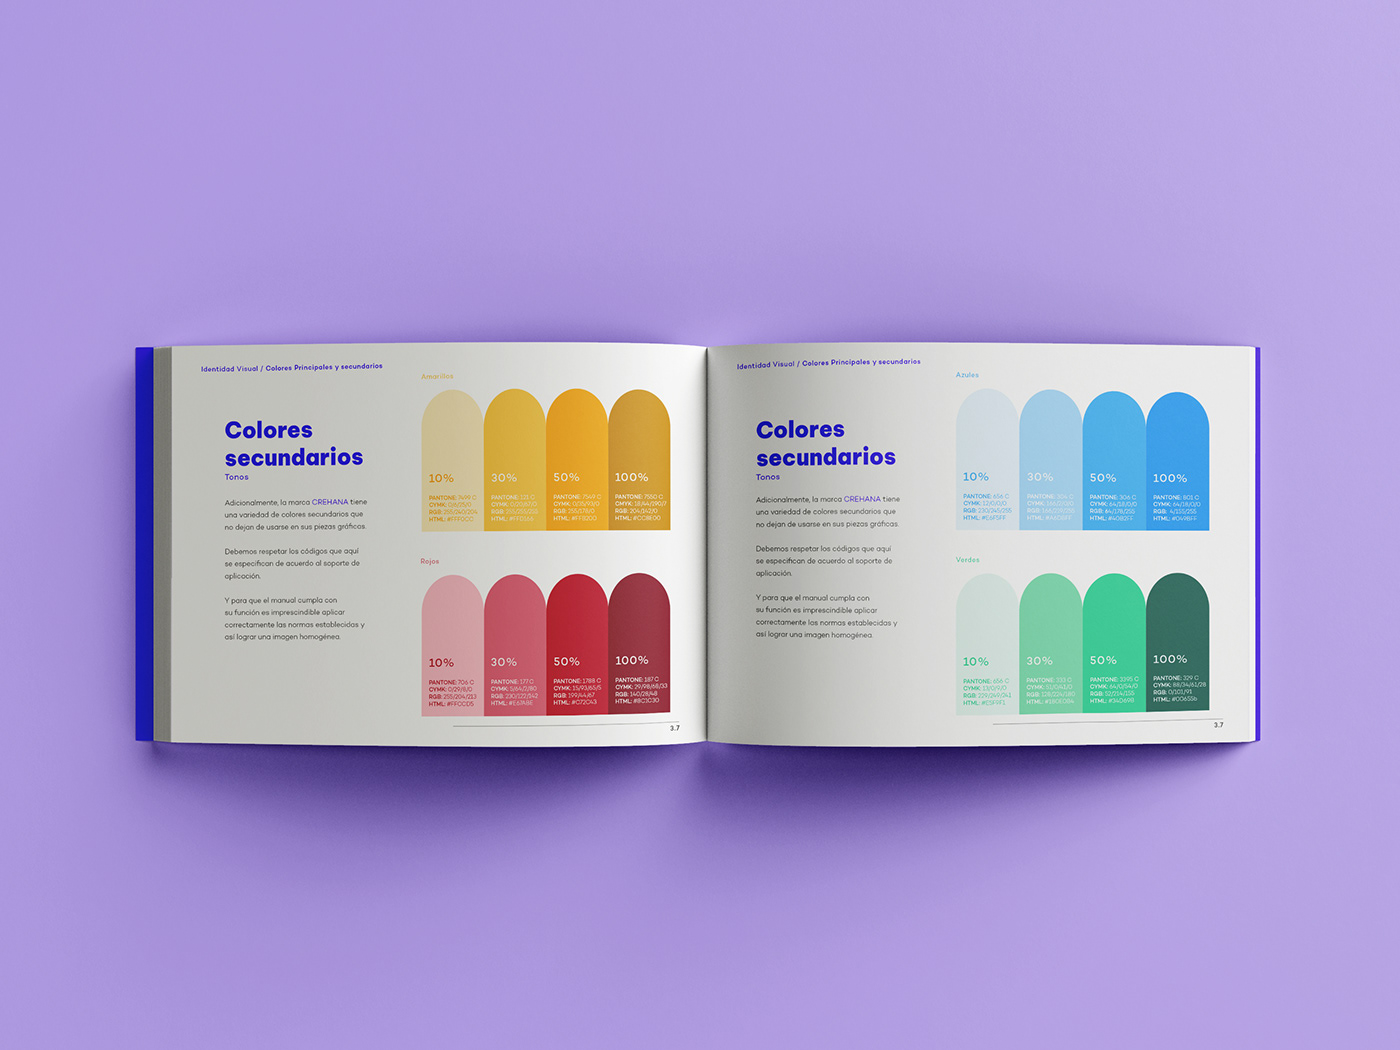 Brand Design brandbook crehana diseño gráfico identidad visual IPP Manual de Marca marca visual identity Identidad Corporativa